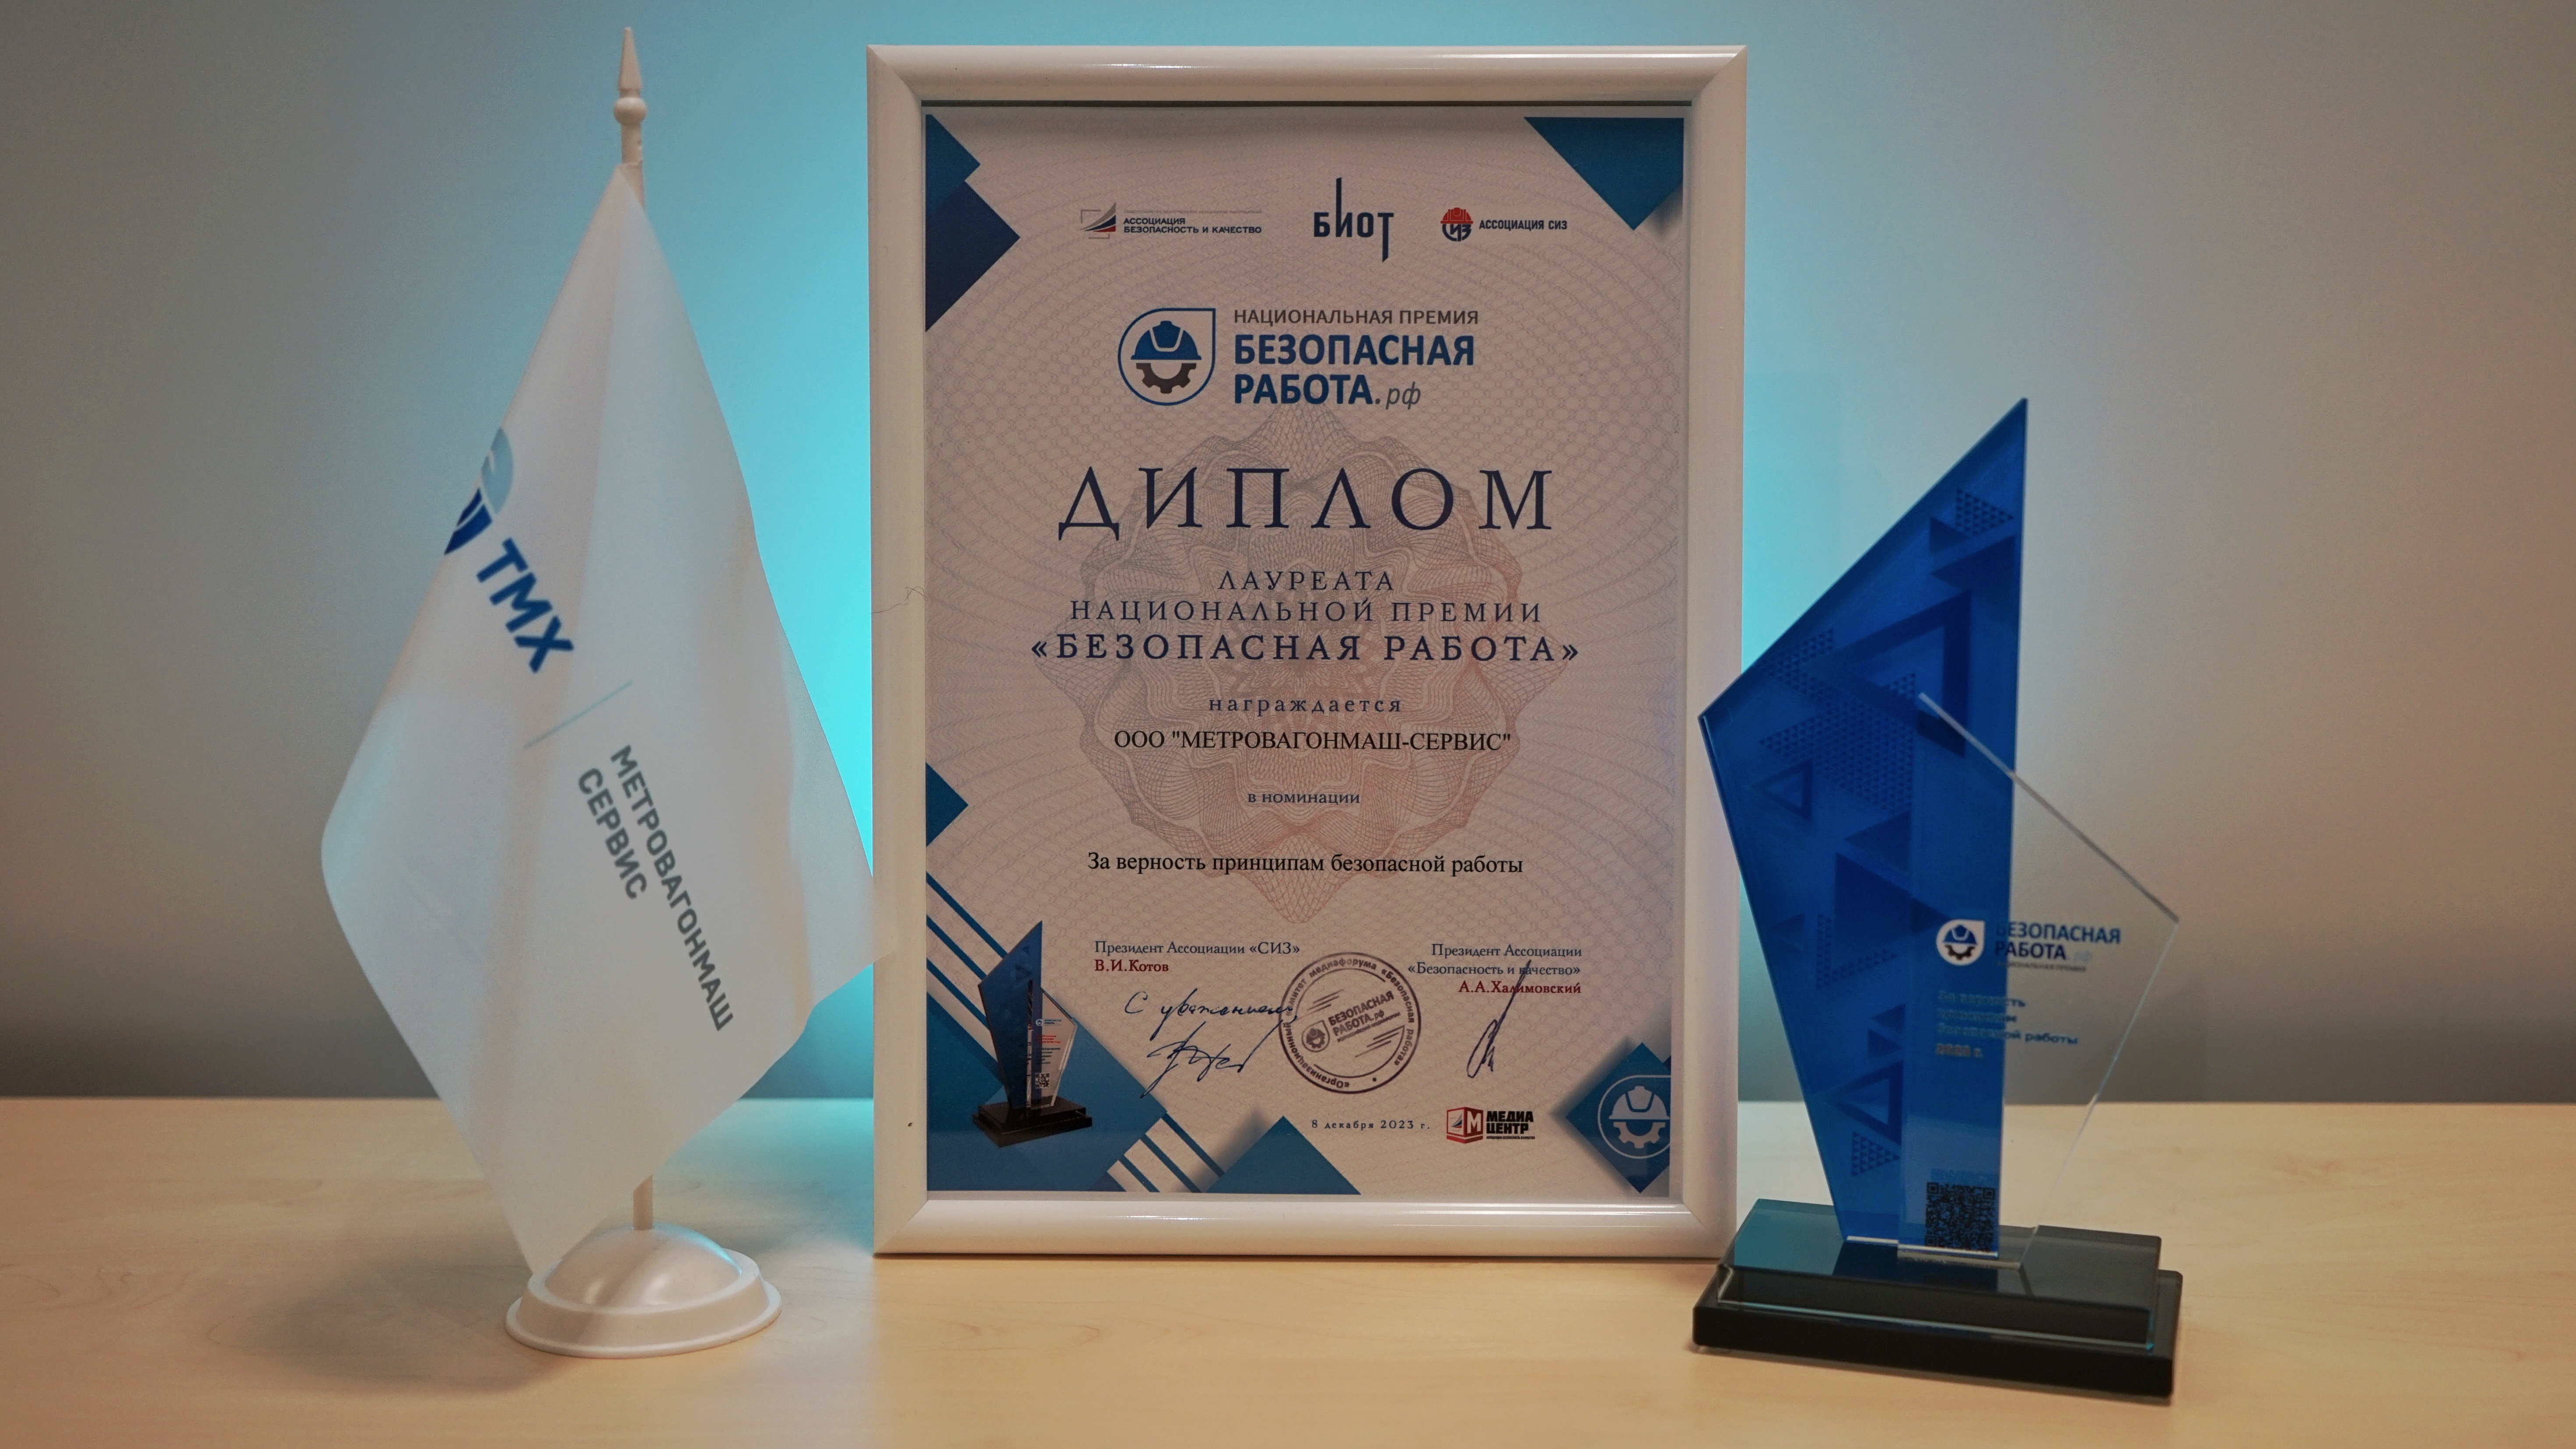 Метровагонмаш-Сервис стал лауреатом национальной премии «Безопасная работа»